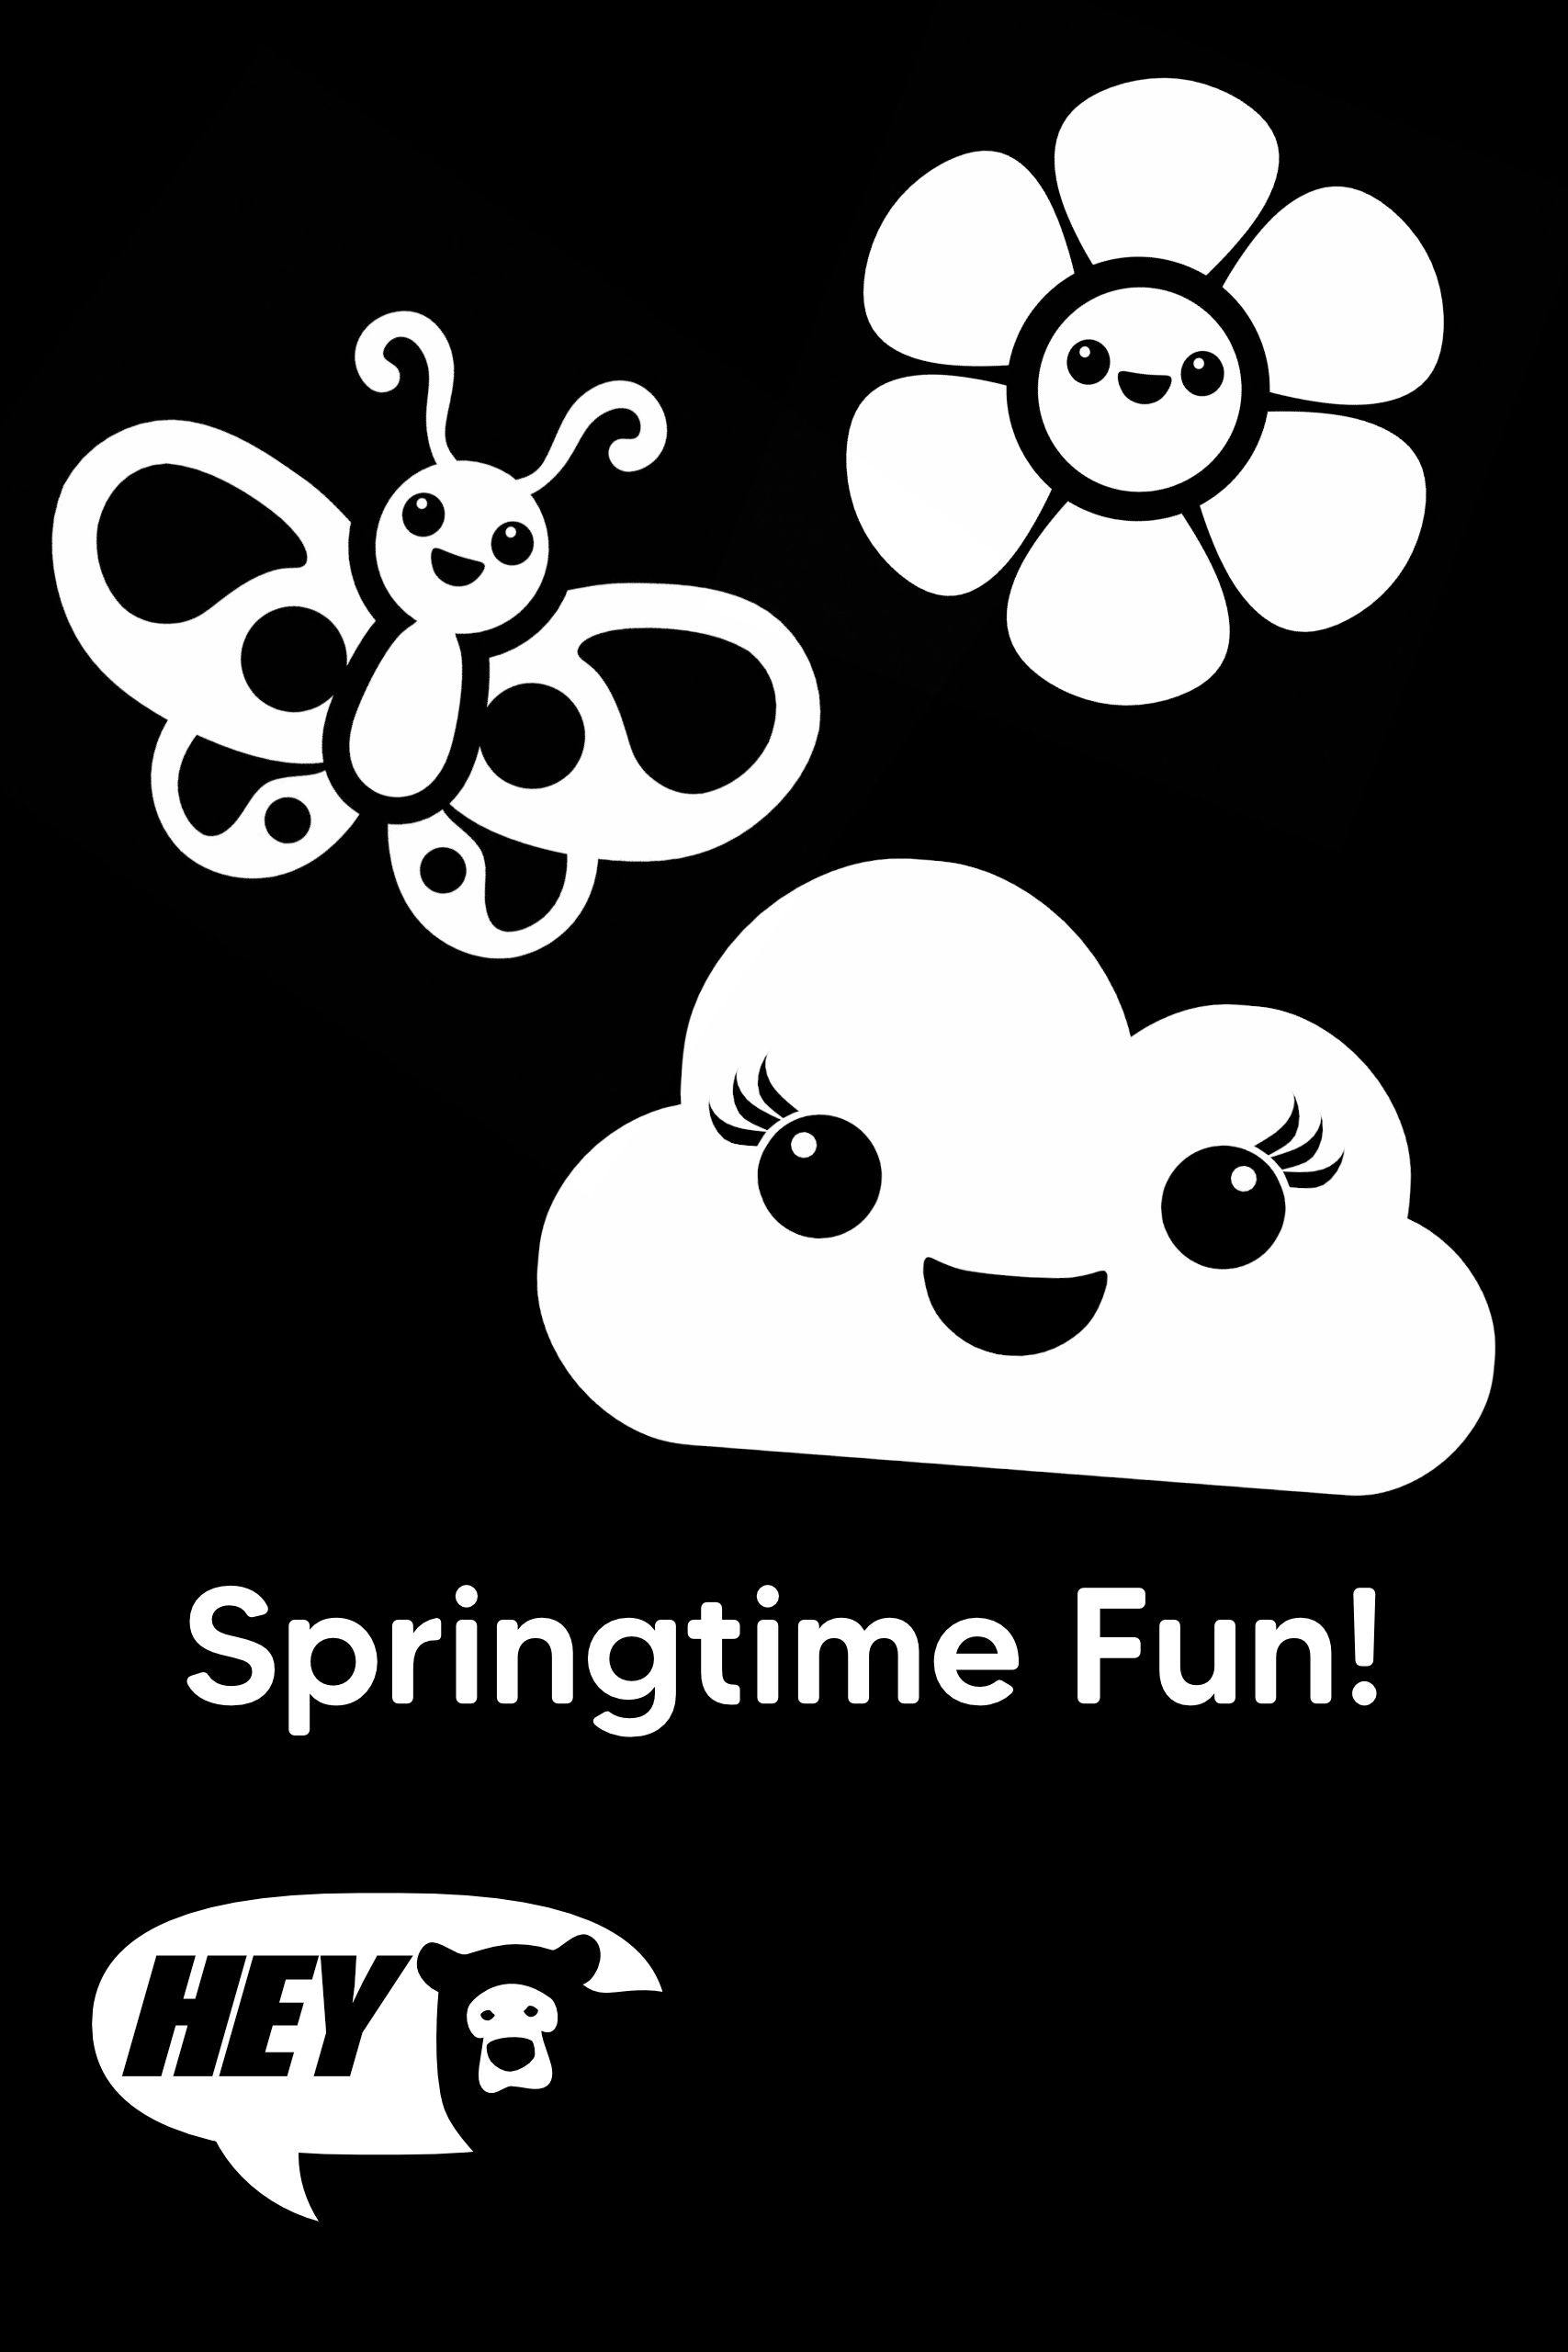 Springtime Fun